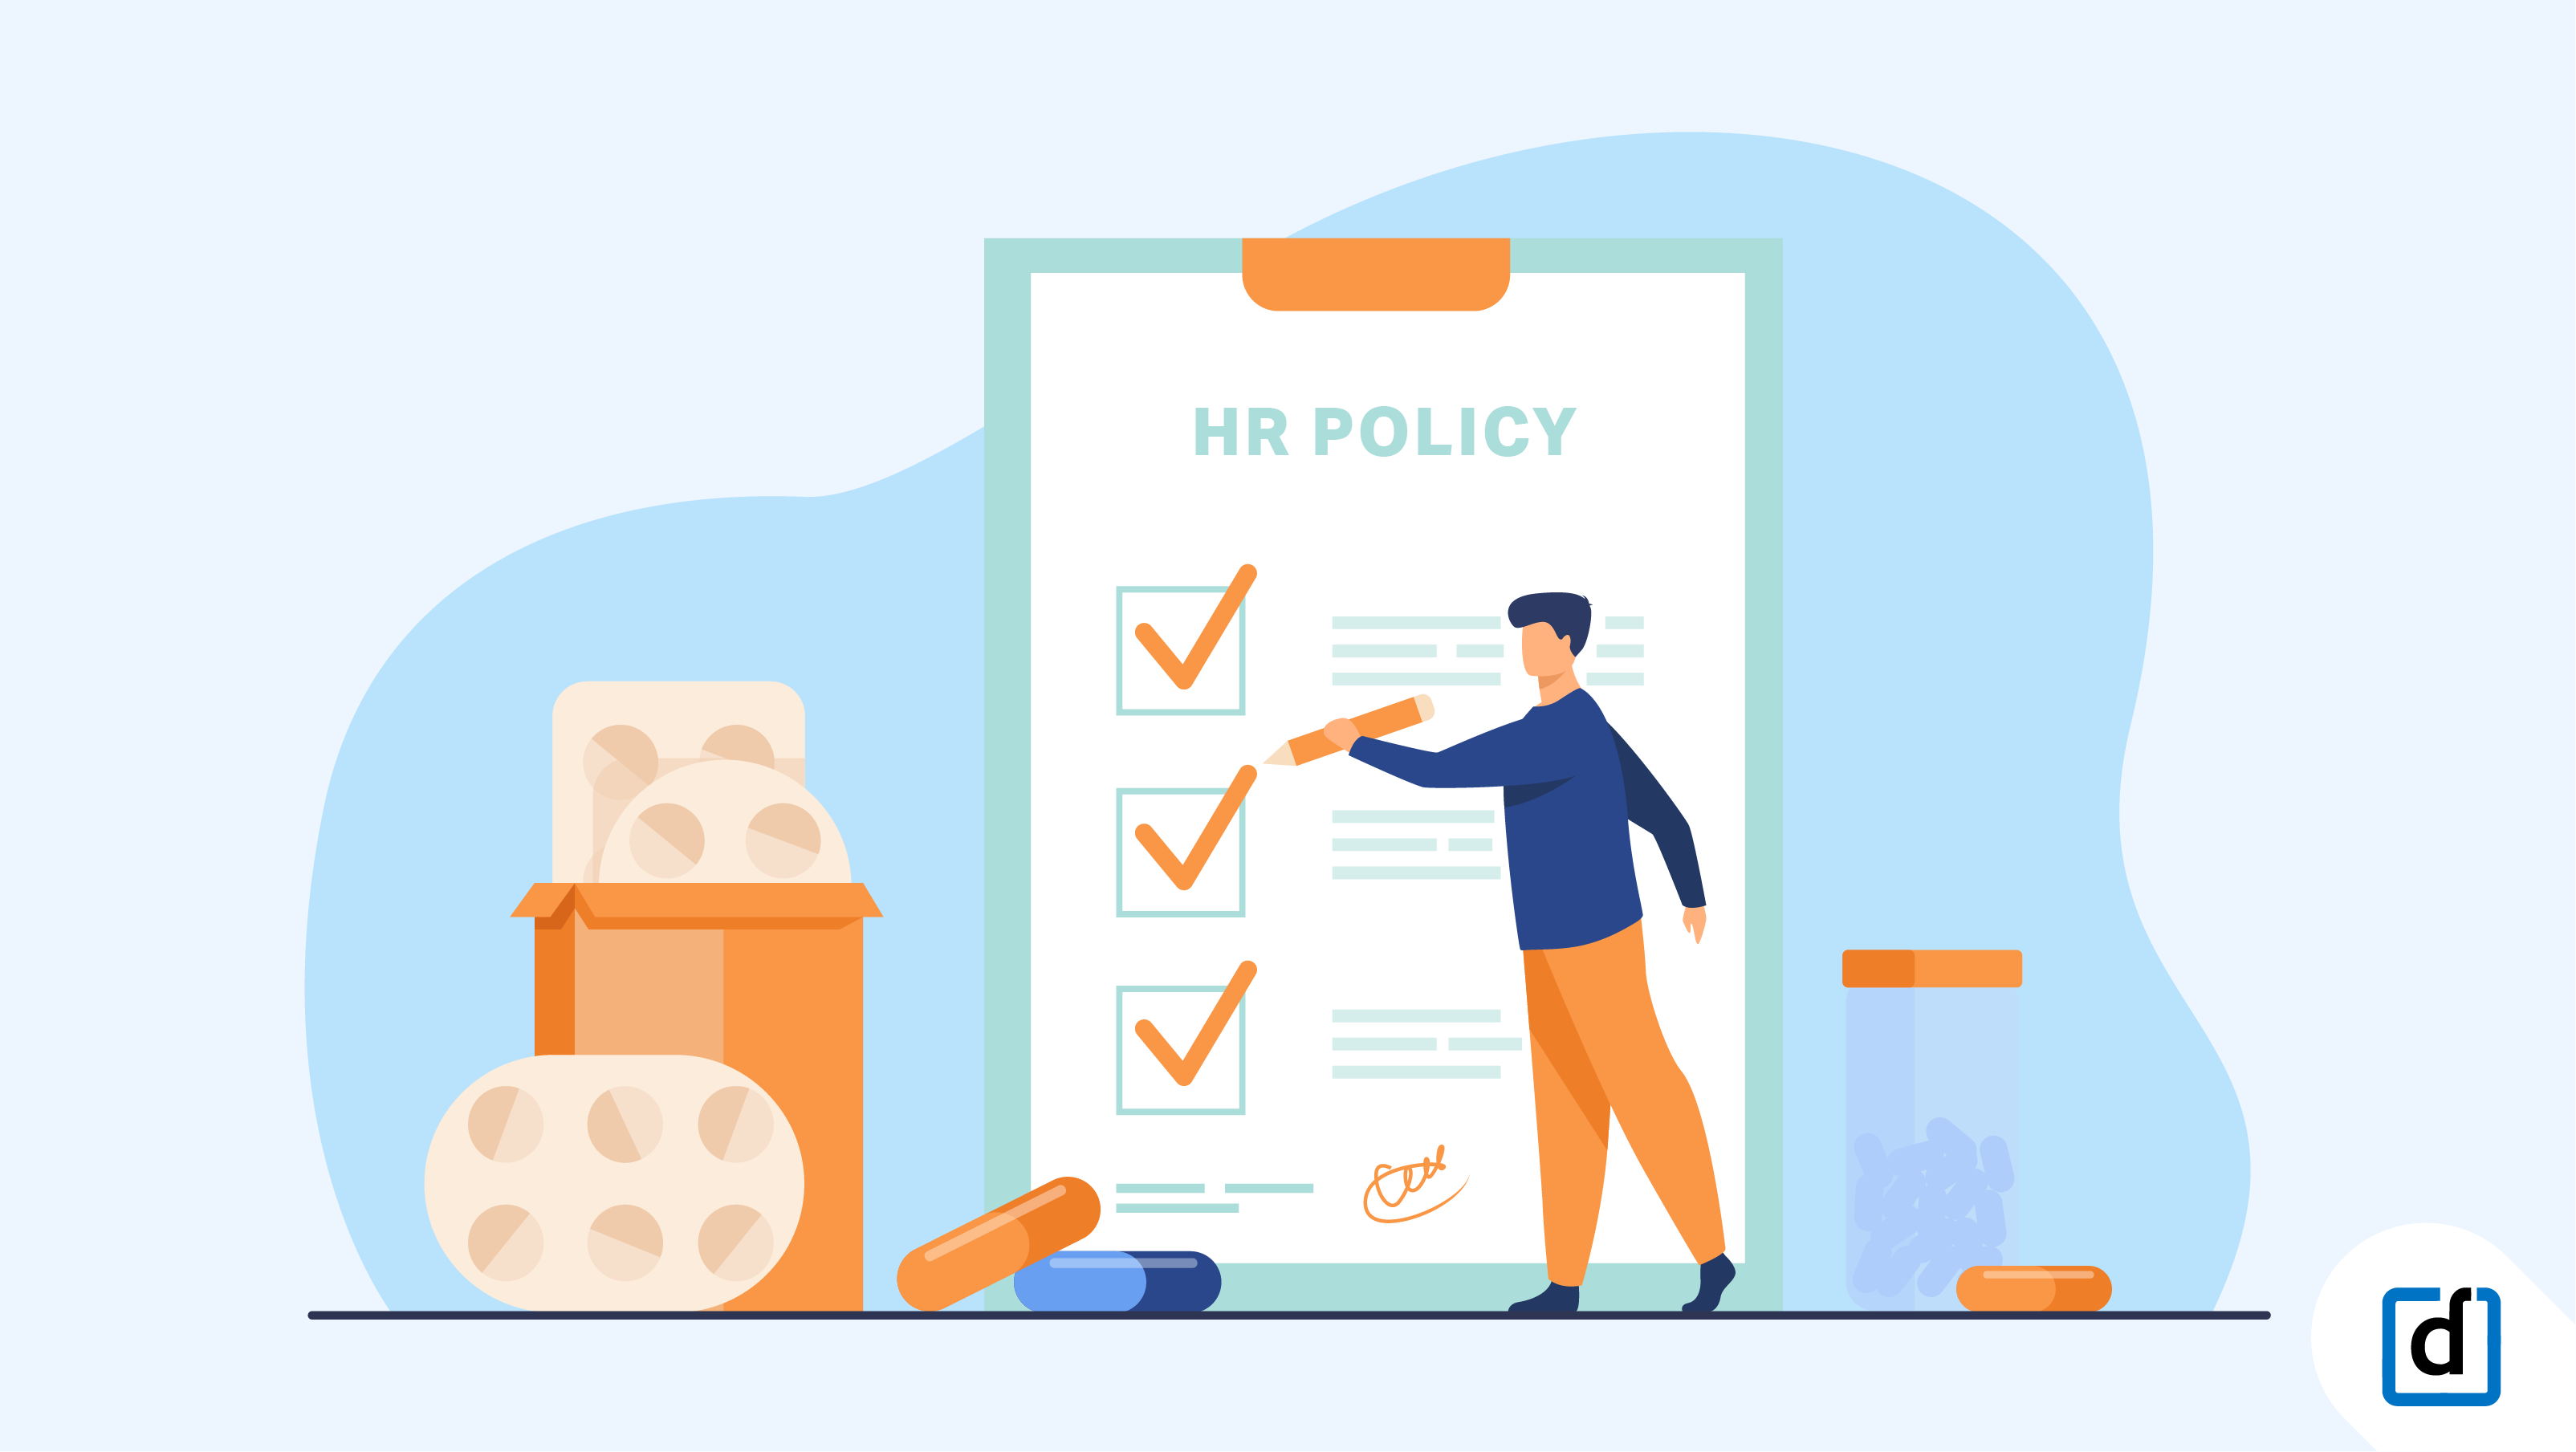 HR policies